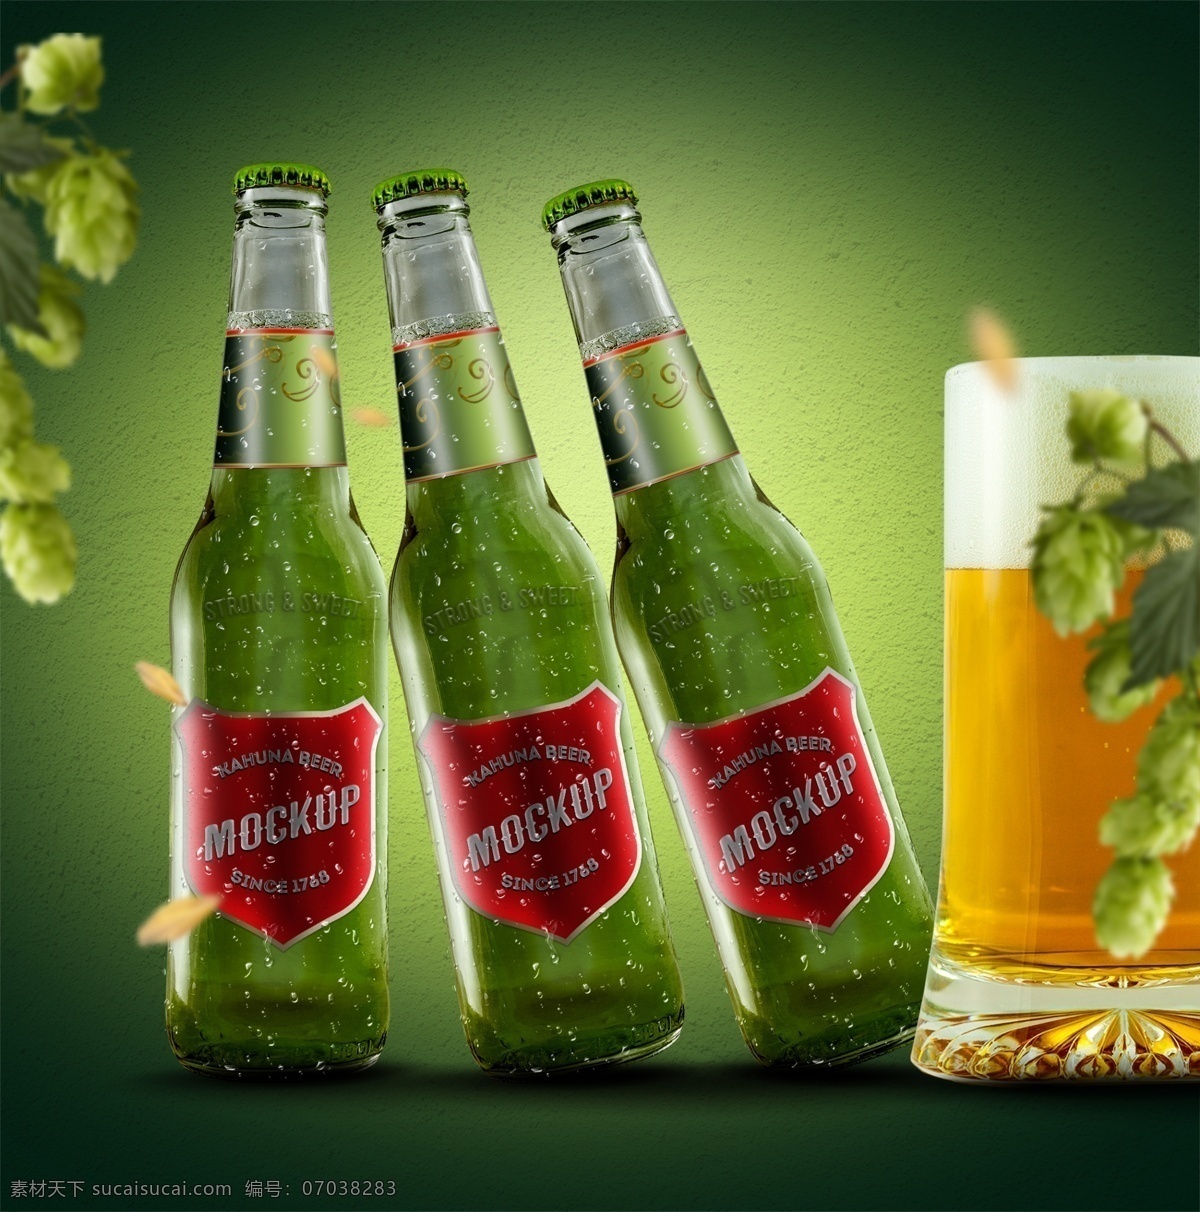 绿色 啤酒瓶 包装 样机 啤酒 包装样机 玻璃瓶 瓶子 酒 啤酒样机 样机模板 玻璃瓶样机 瓶子样机 绿色玻璃瓶